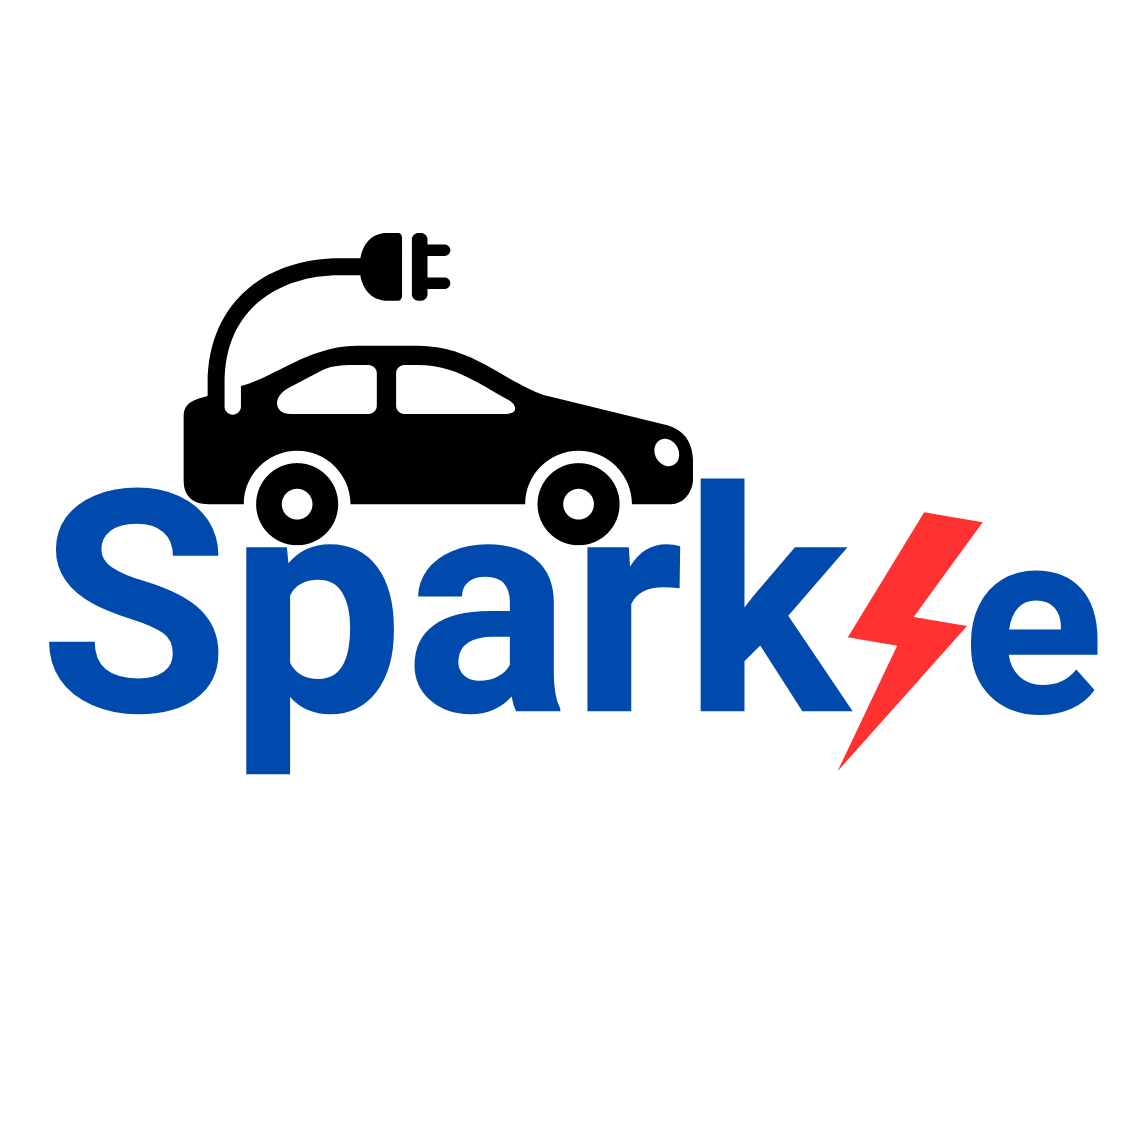 Team Spark/e